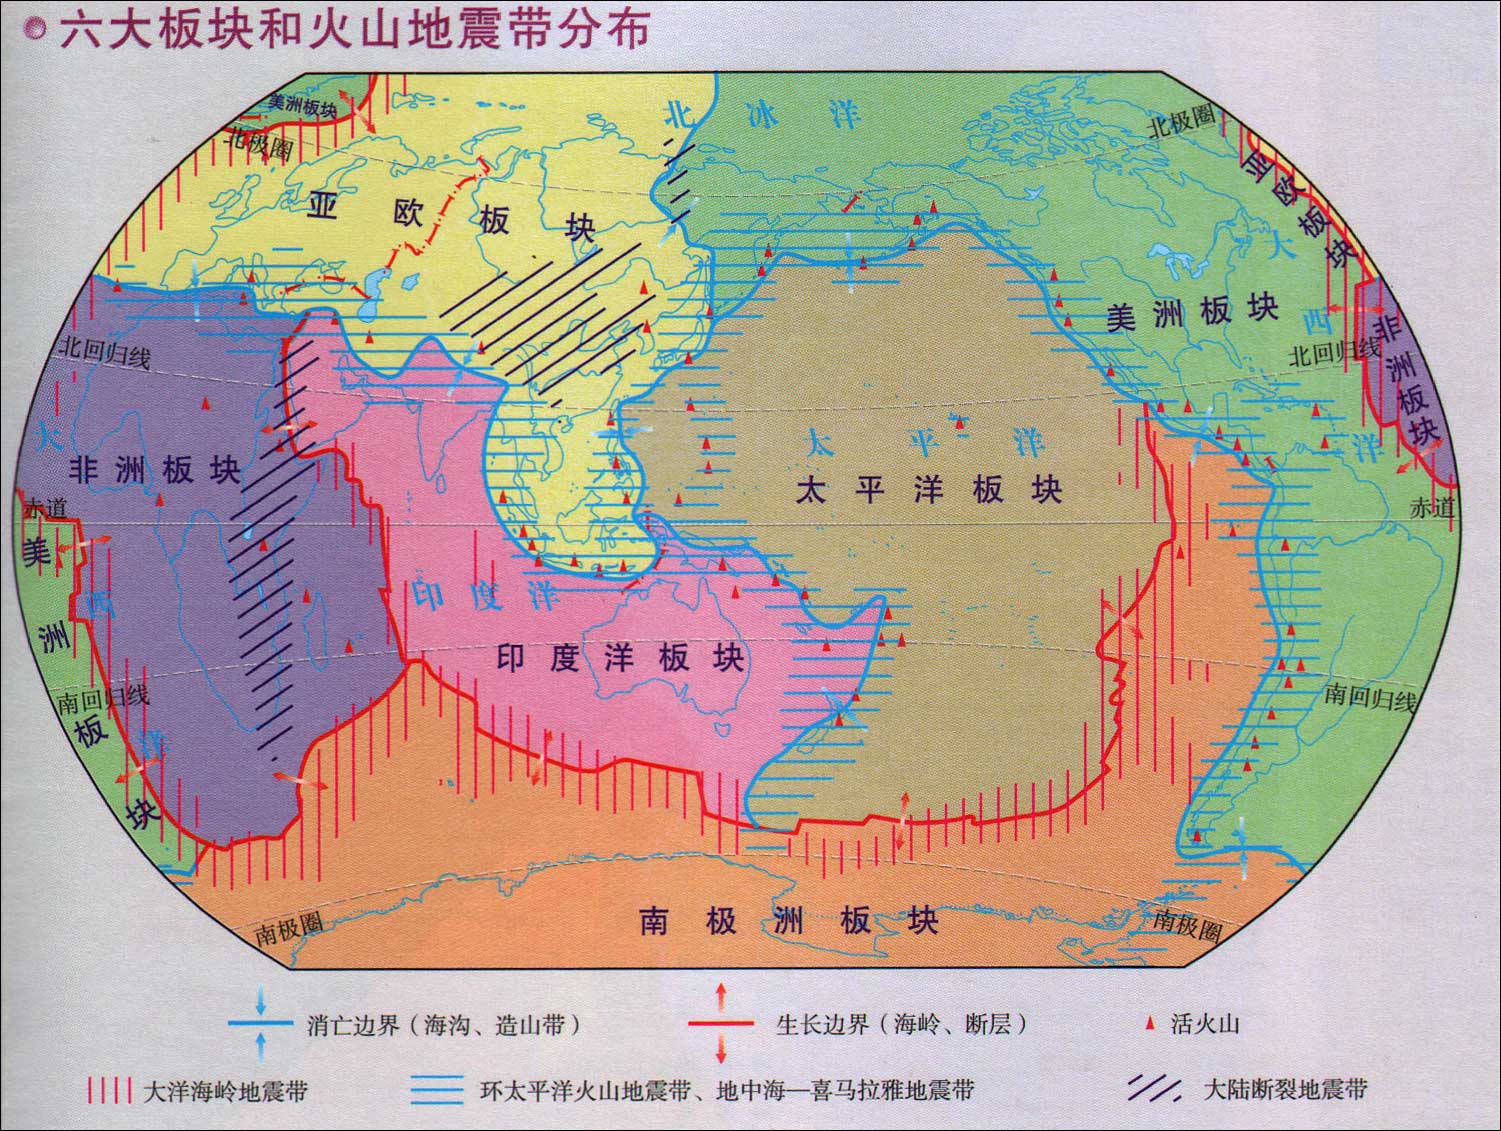 地球六大板块和火山地震带分布图_世界地理地图库